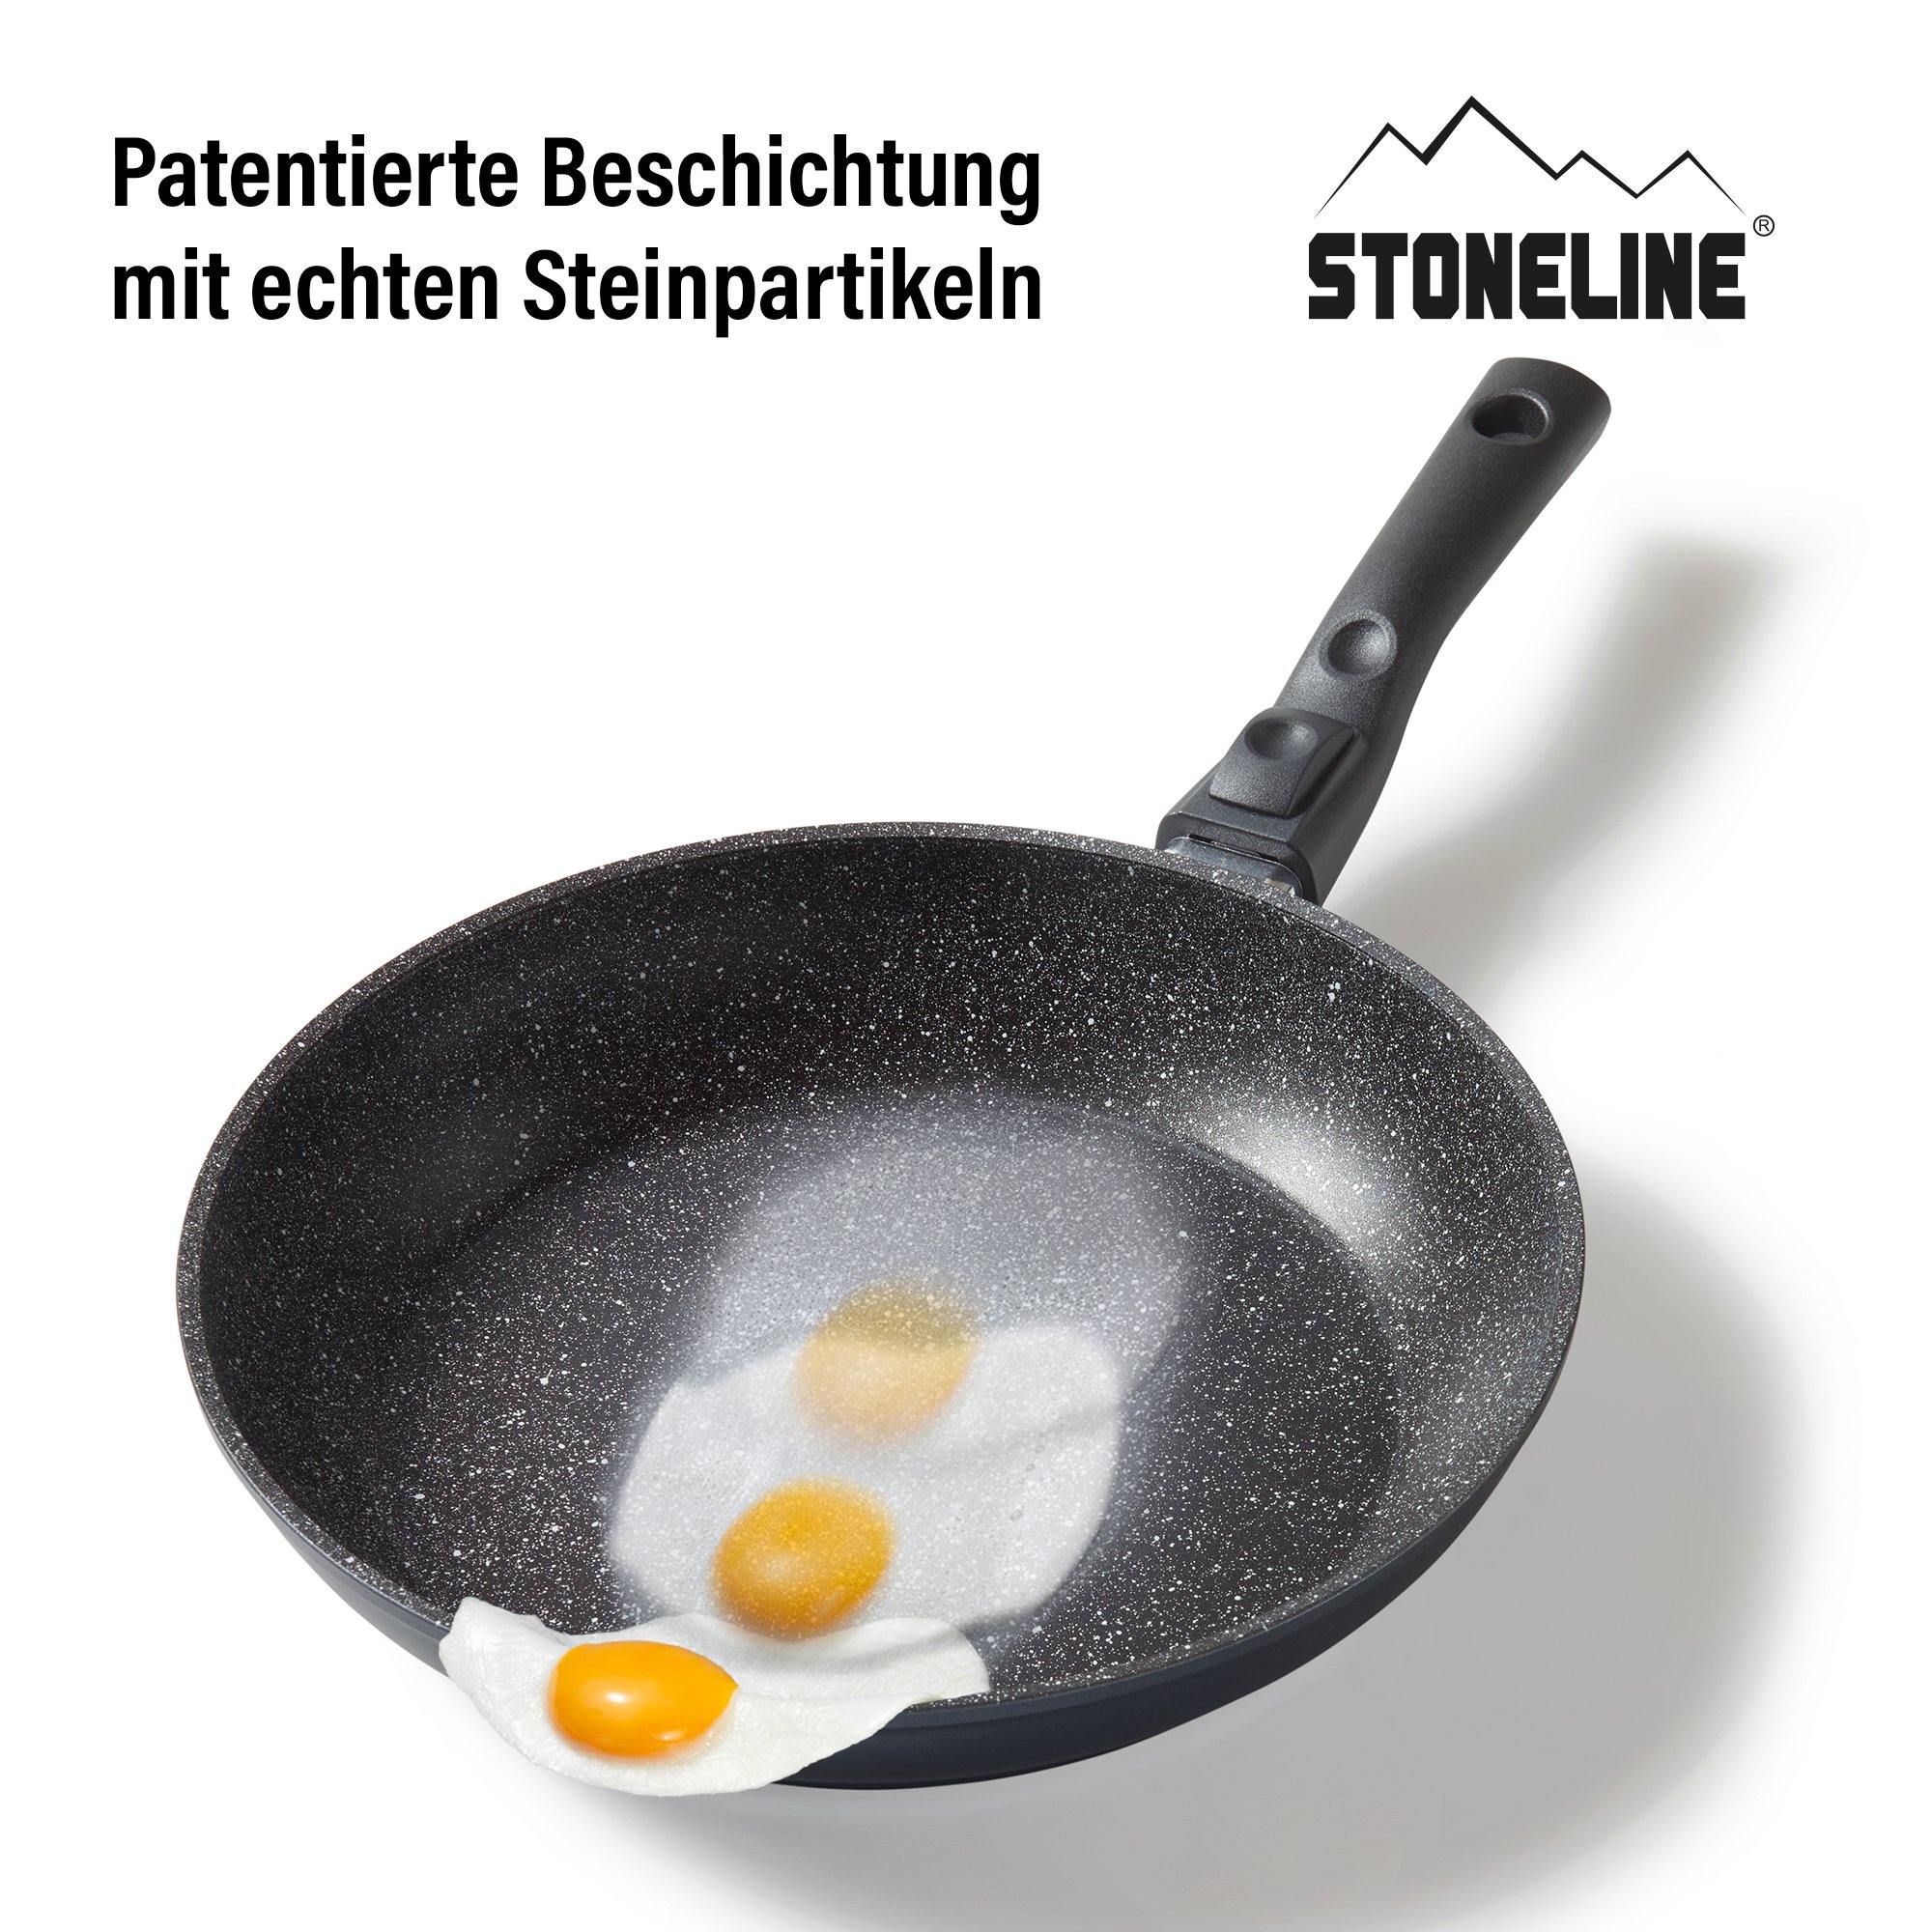 STONELINE® poêle à frire 28 cm, Made in Germany avec poignée amovible, induction et antiadhésif